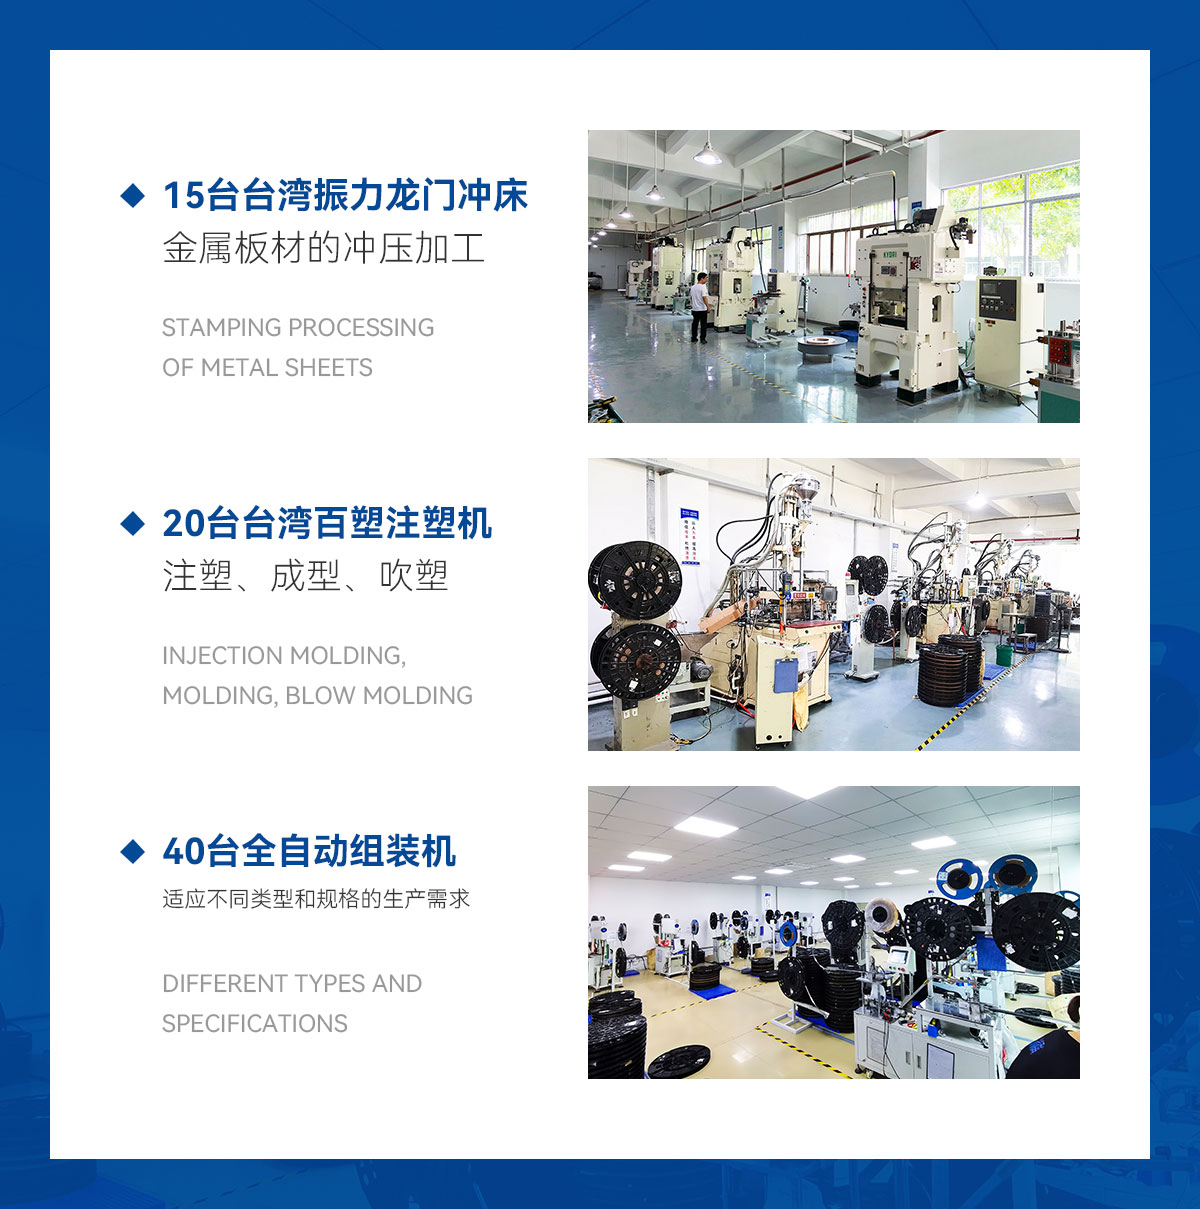 15台台湾振力龙门冲床-金属板材的冲压加工-20台台湾百塑注塑机-注塑、成型、吹塑-40台全自动组装机-适应不同类型和规格的生产需求